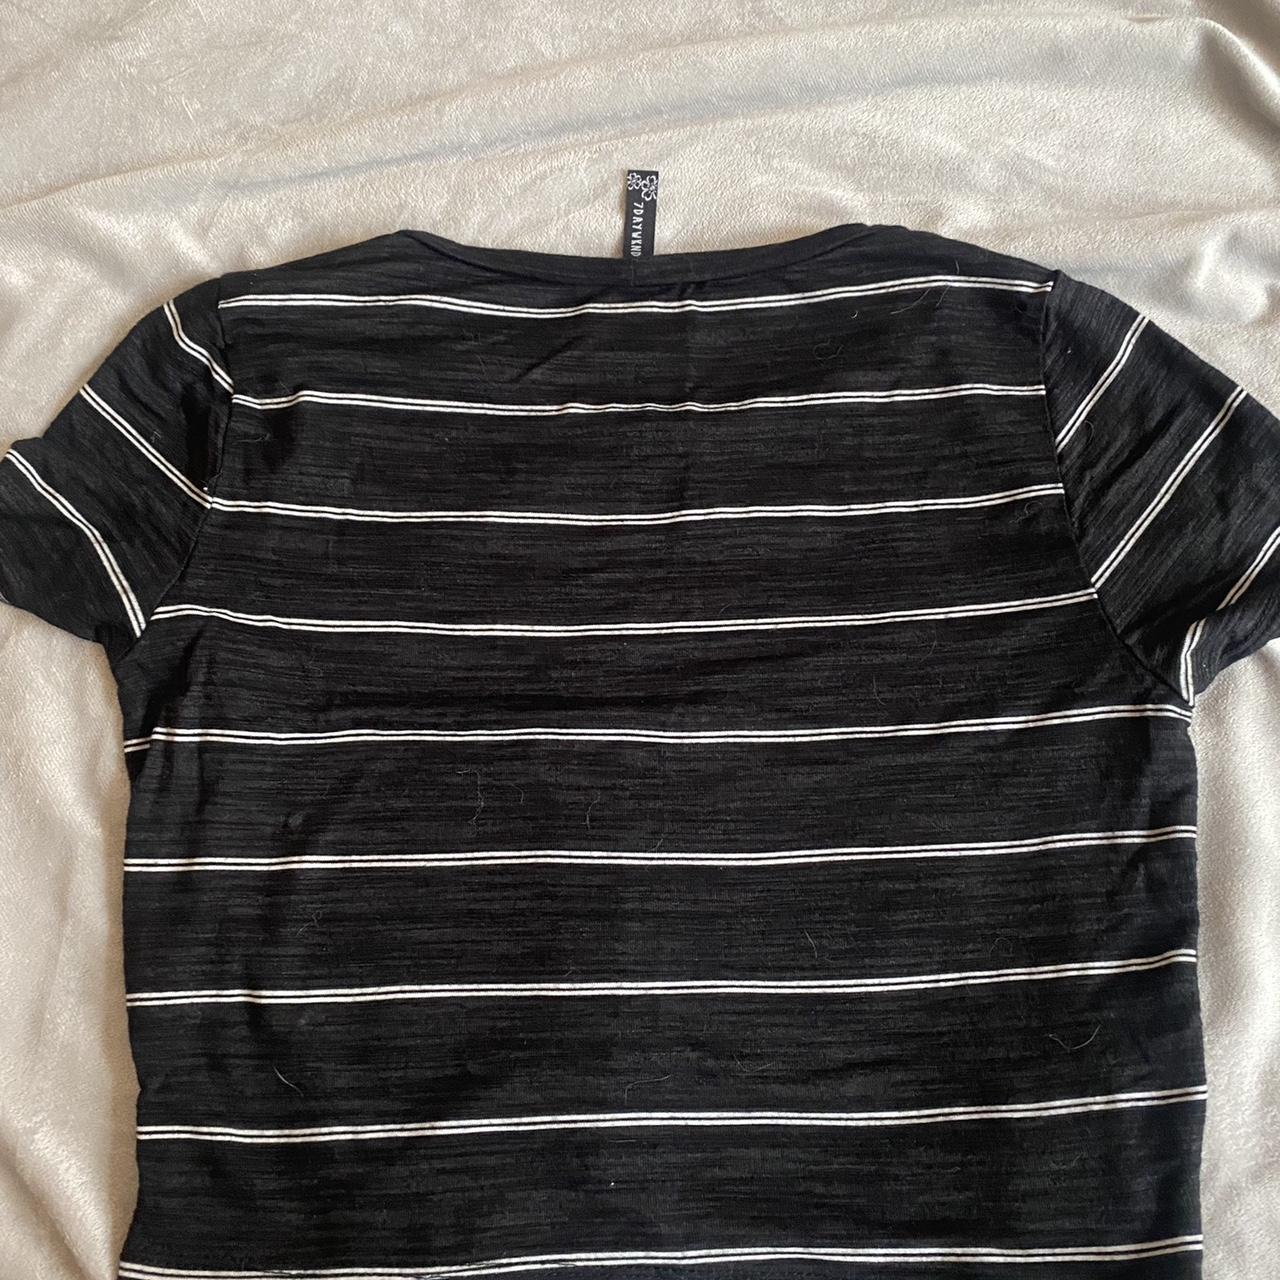 🖤🐇 ️🦷🏴‍☠️ black & white cropped striped shirt size... - Depop